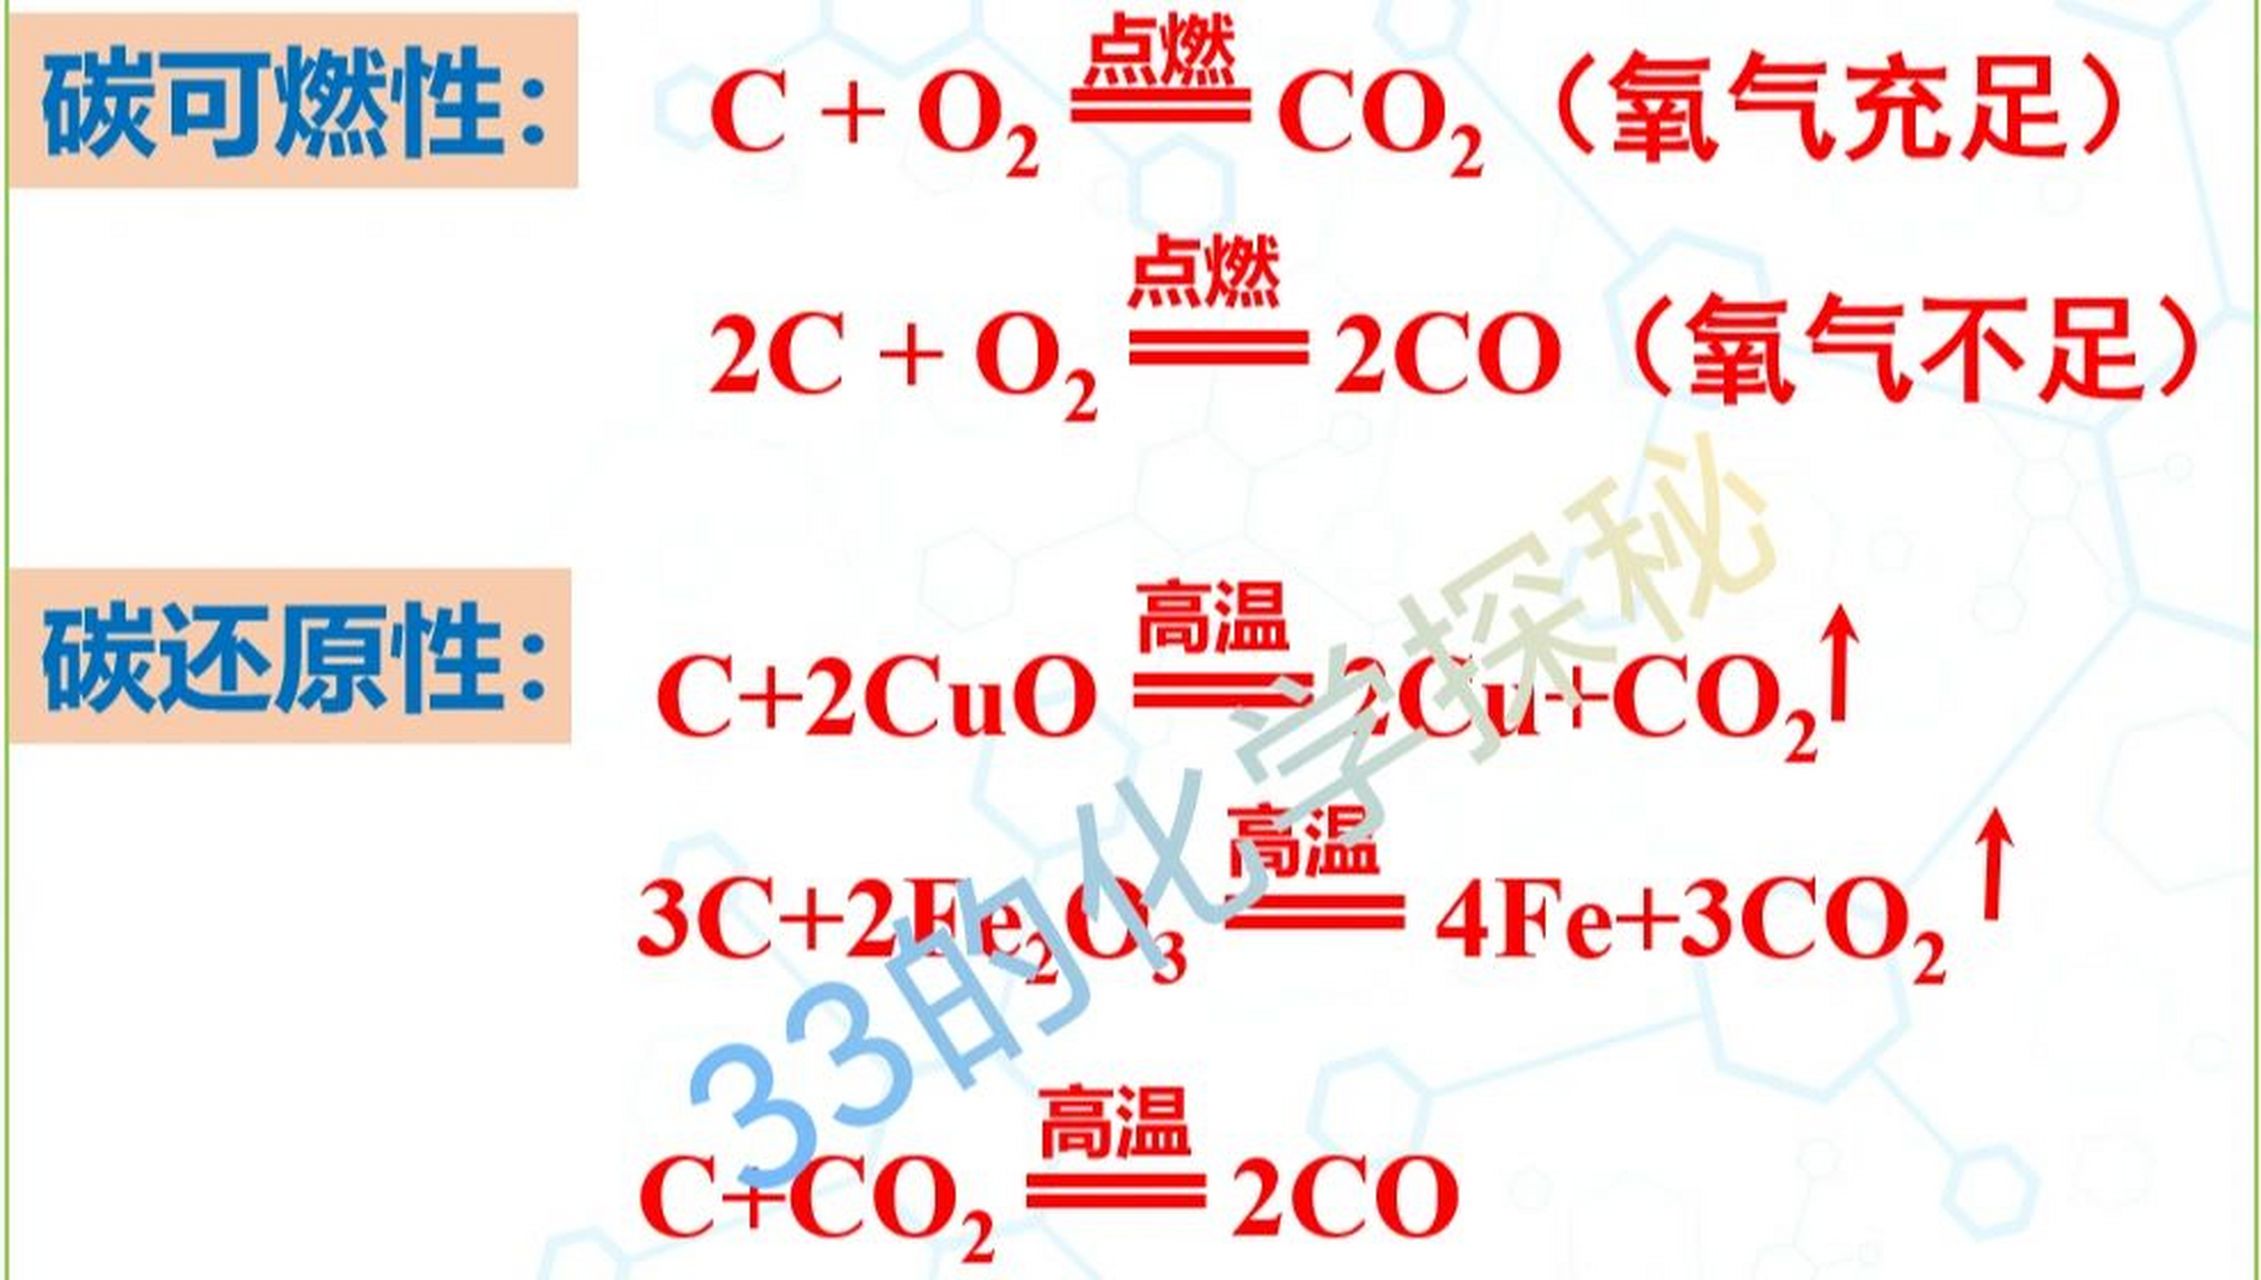 初三化学 碳和碳的氧化物 相关化学方程式 初三上,碳及碳的氧化物相关